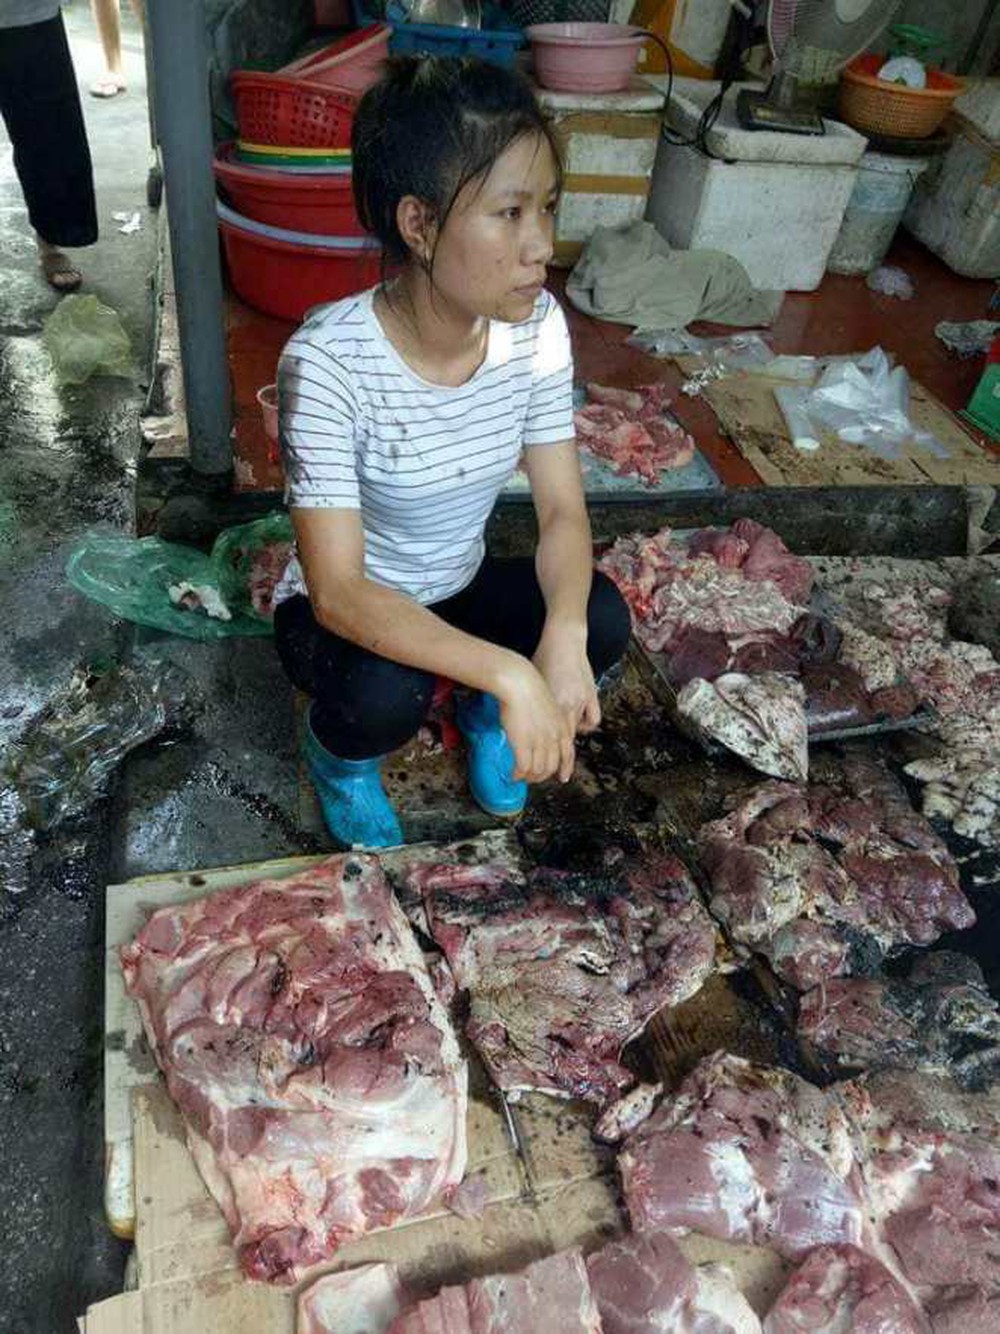 Hải Phòng: Bán thịt lợn giá rẻ, người phụ nữ bị hắt dầu luyn trộn chất thải - Ảnh 1.